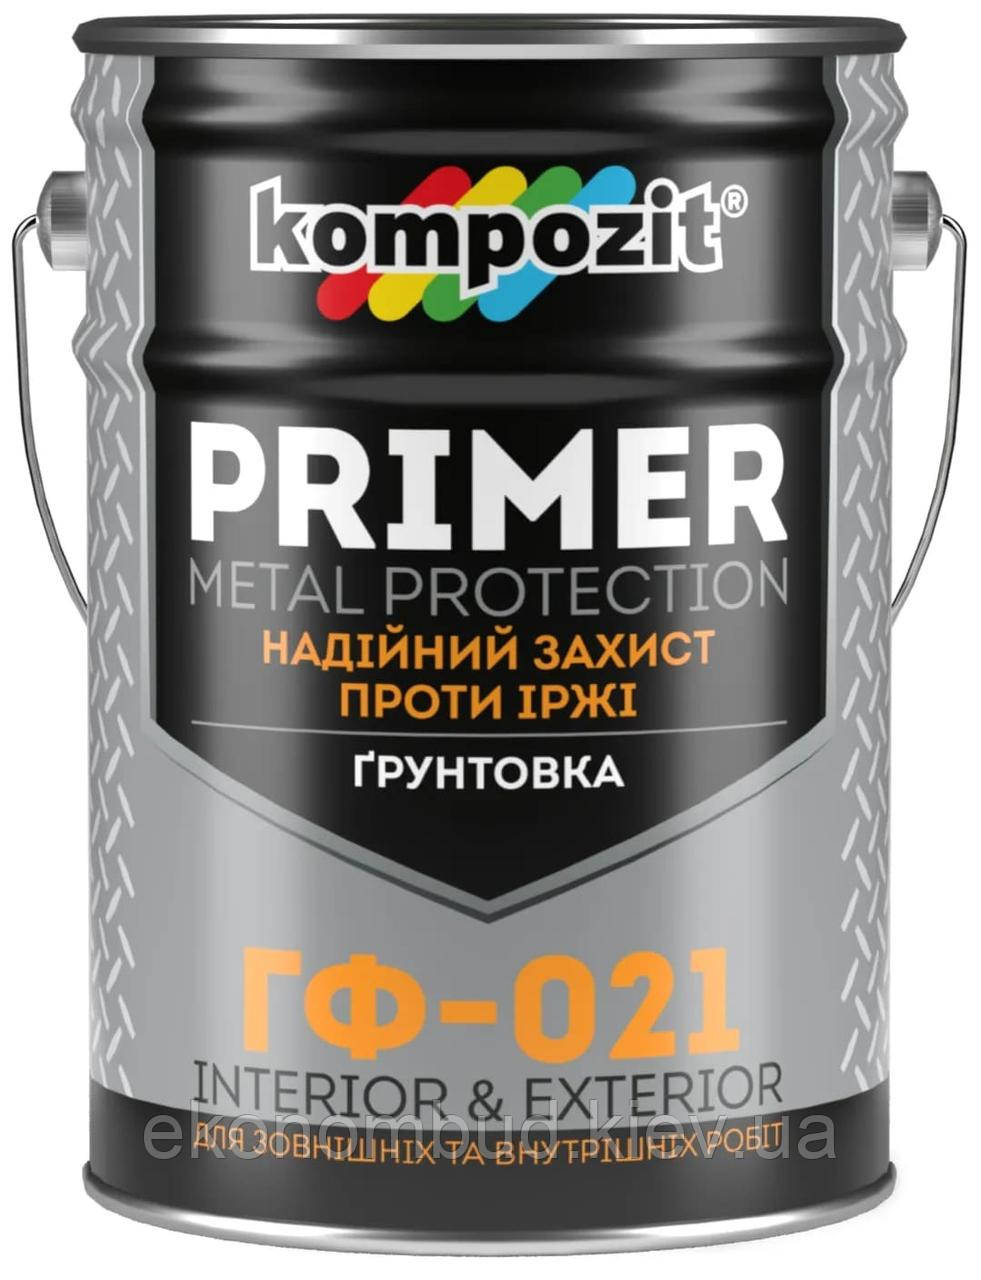 Ґрунтовка ГФ-021 Kompozit® (Колір: Червоно-коричневий, Фасування: 25 кг)